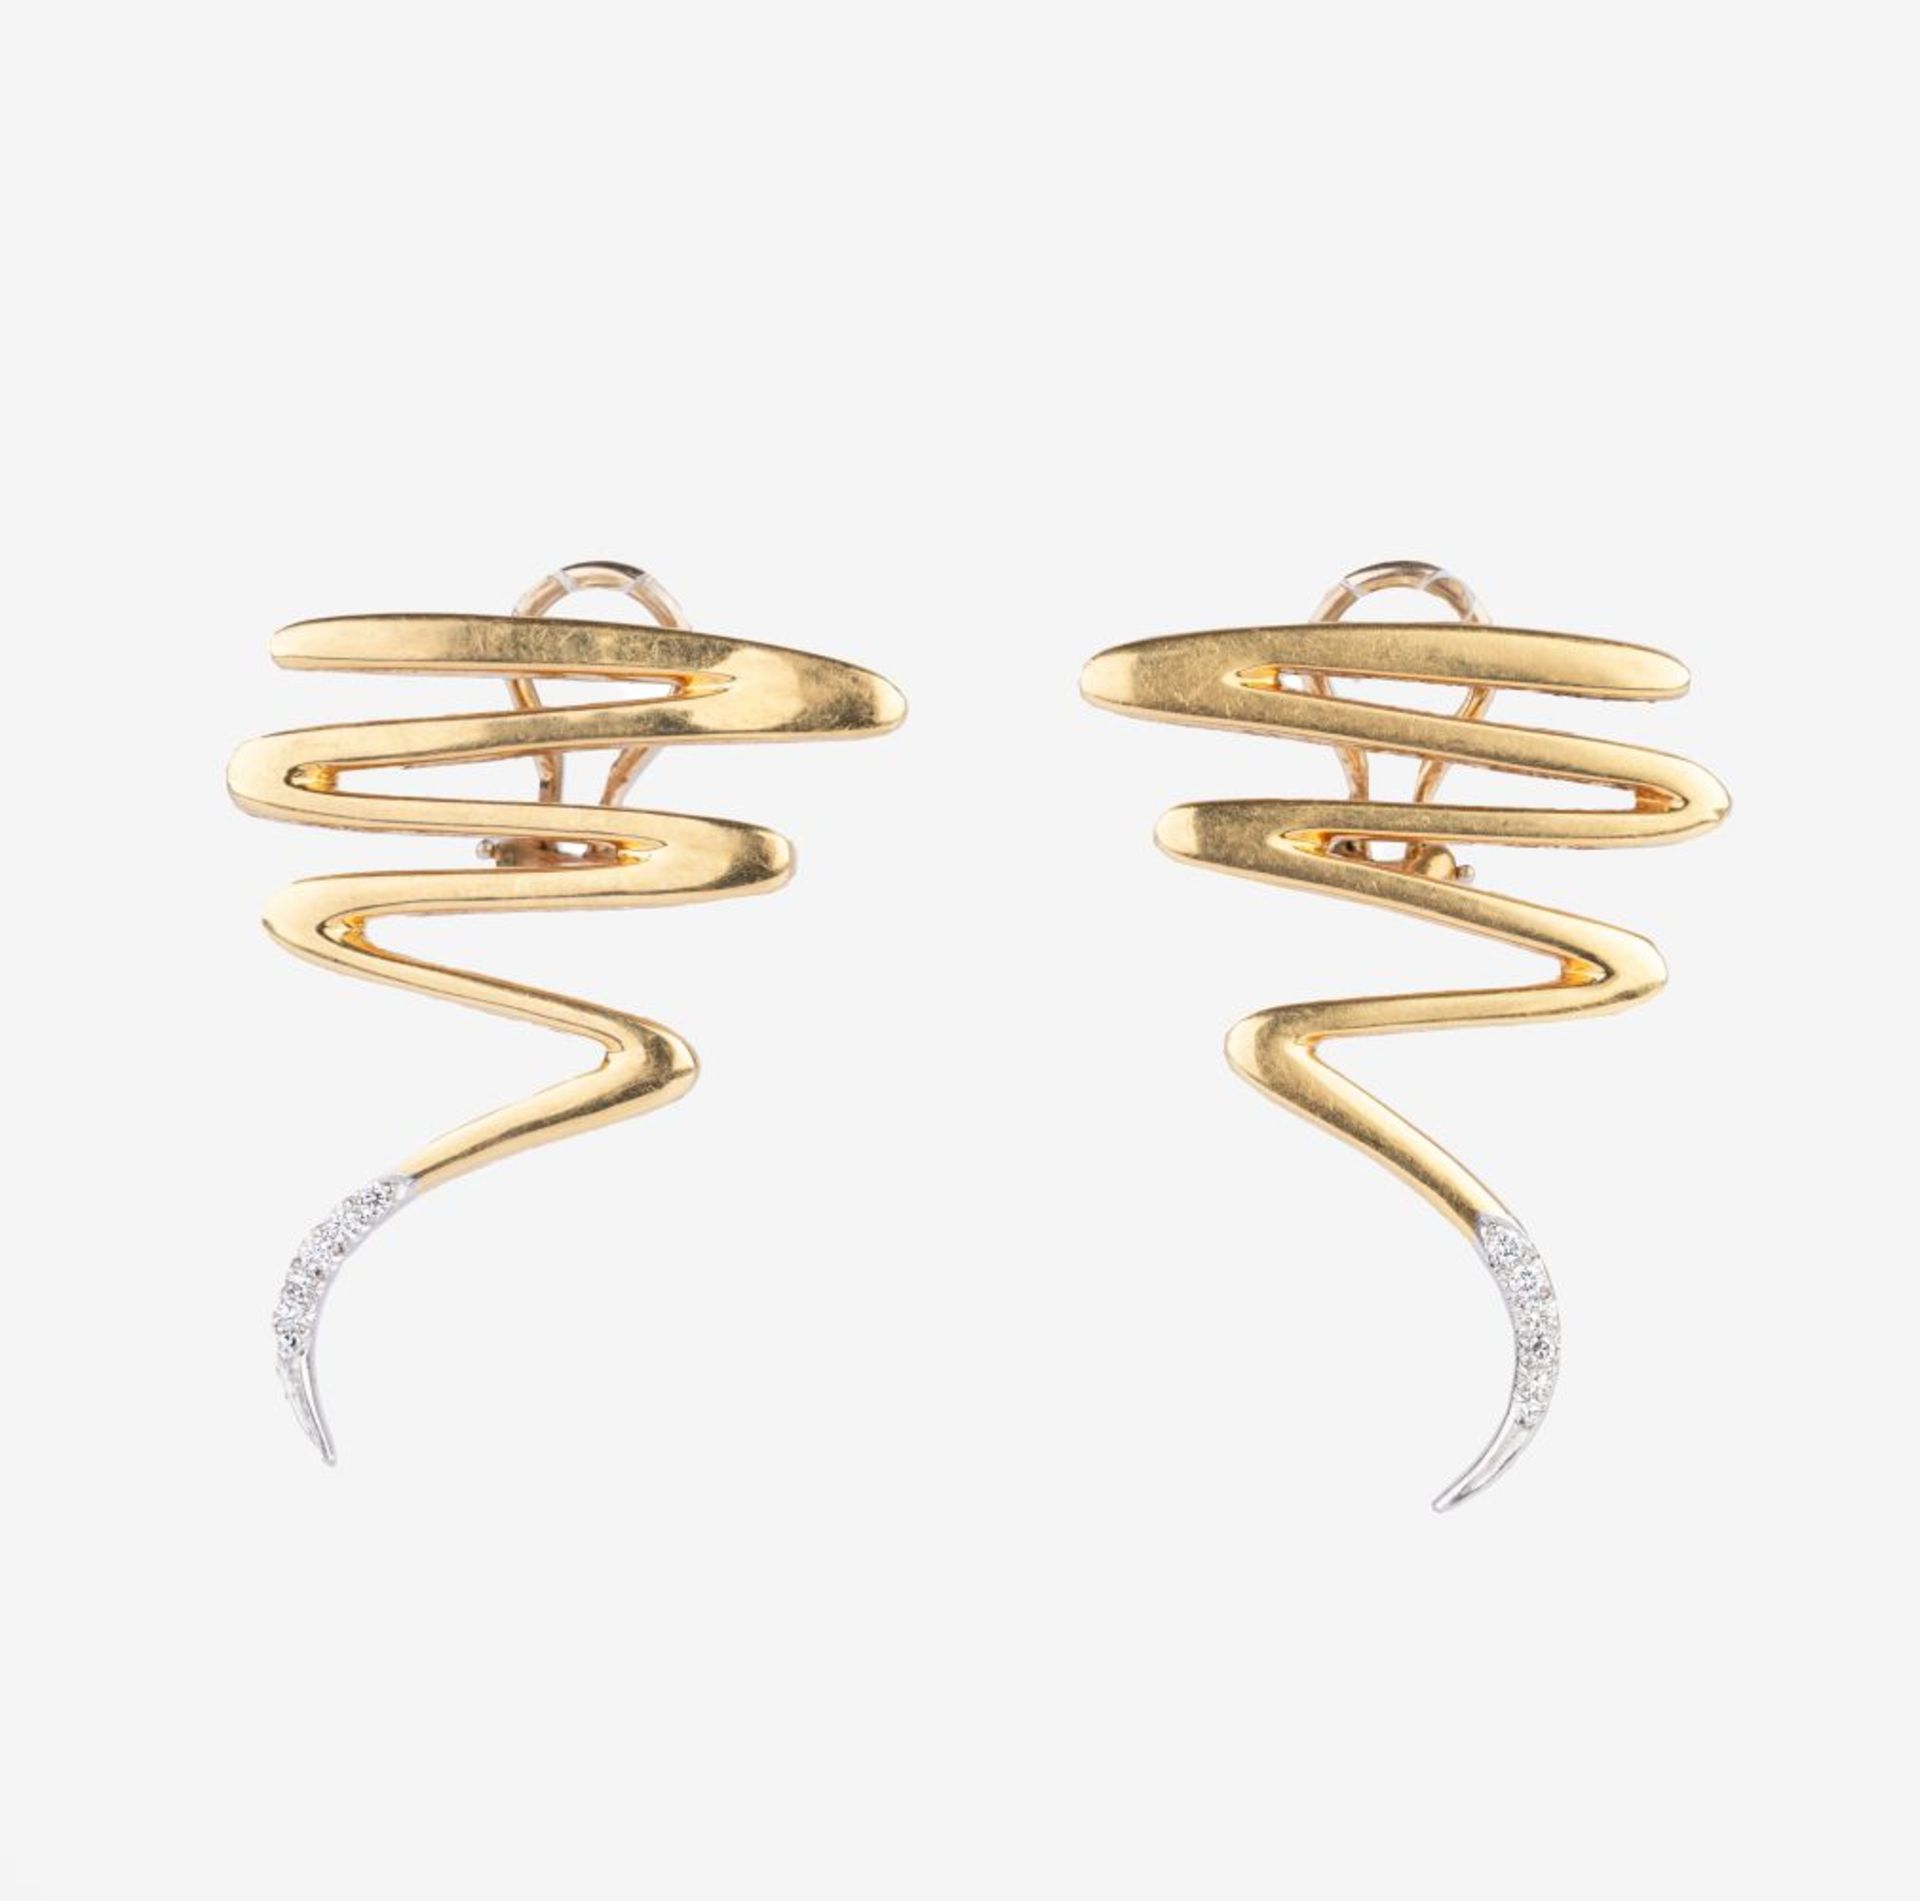 Tiffany & Co. Paar Brillant-Ohrringe 'Scribble' von Paloma Picasso.